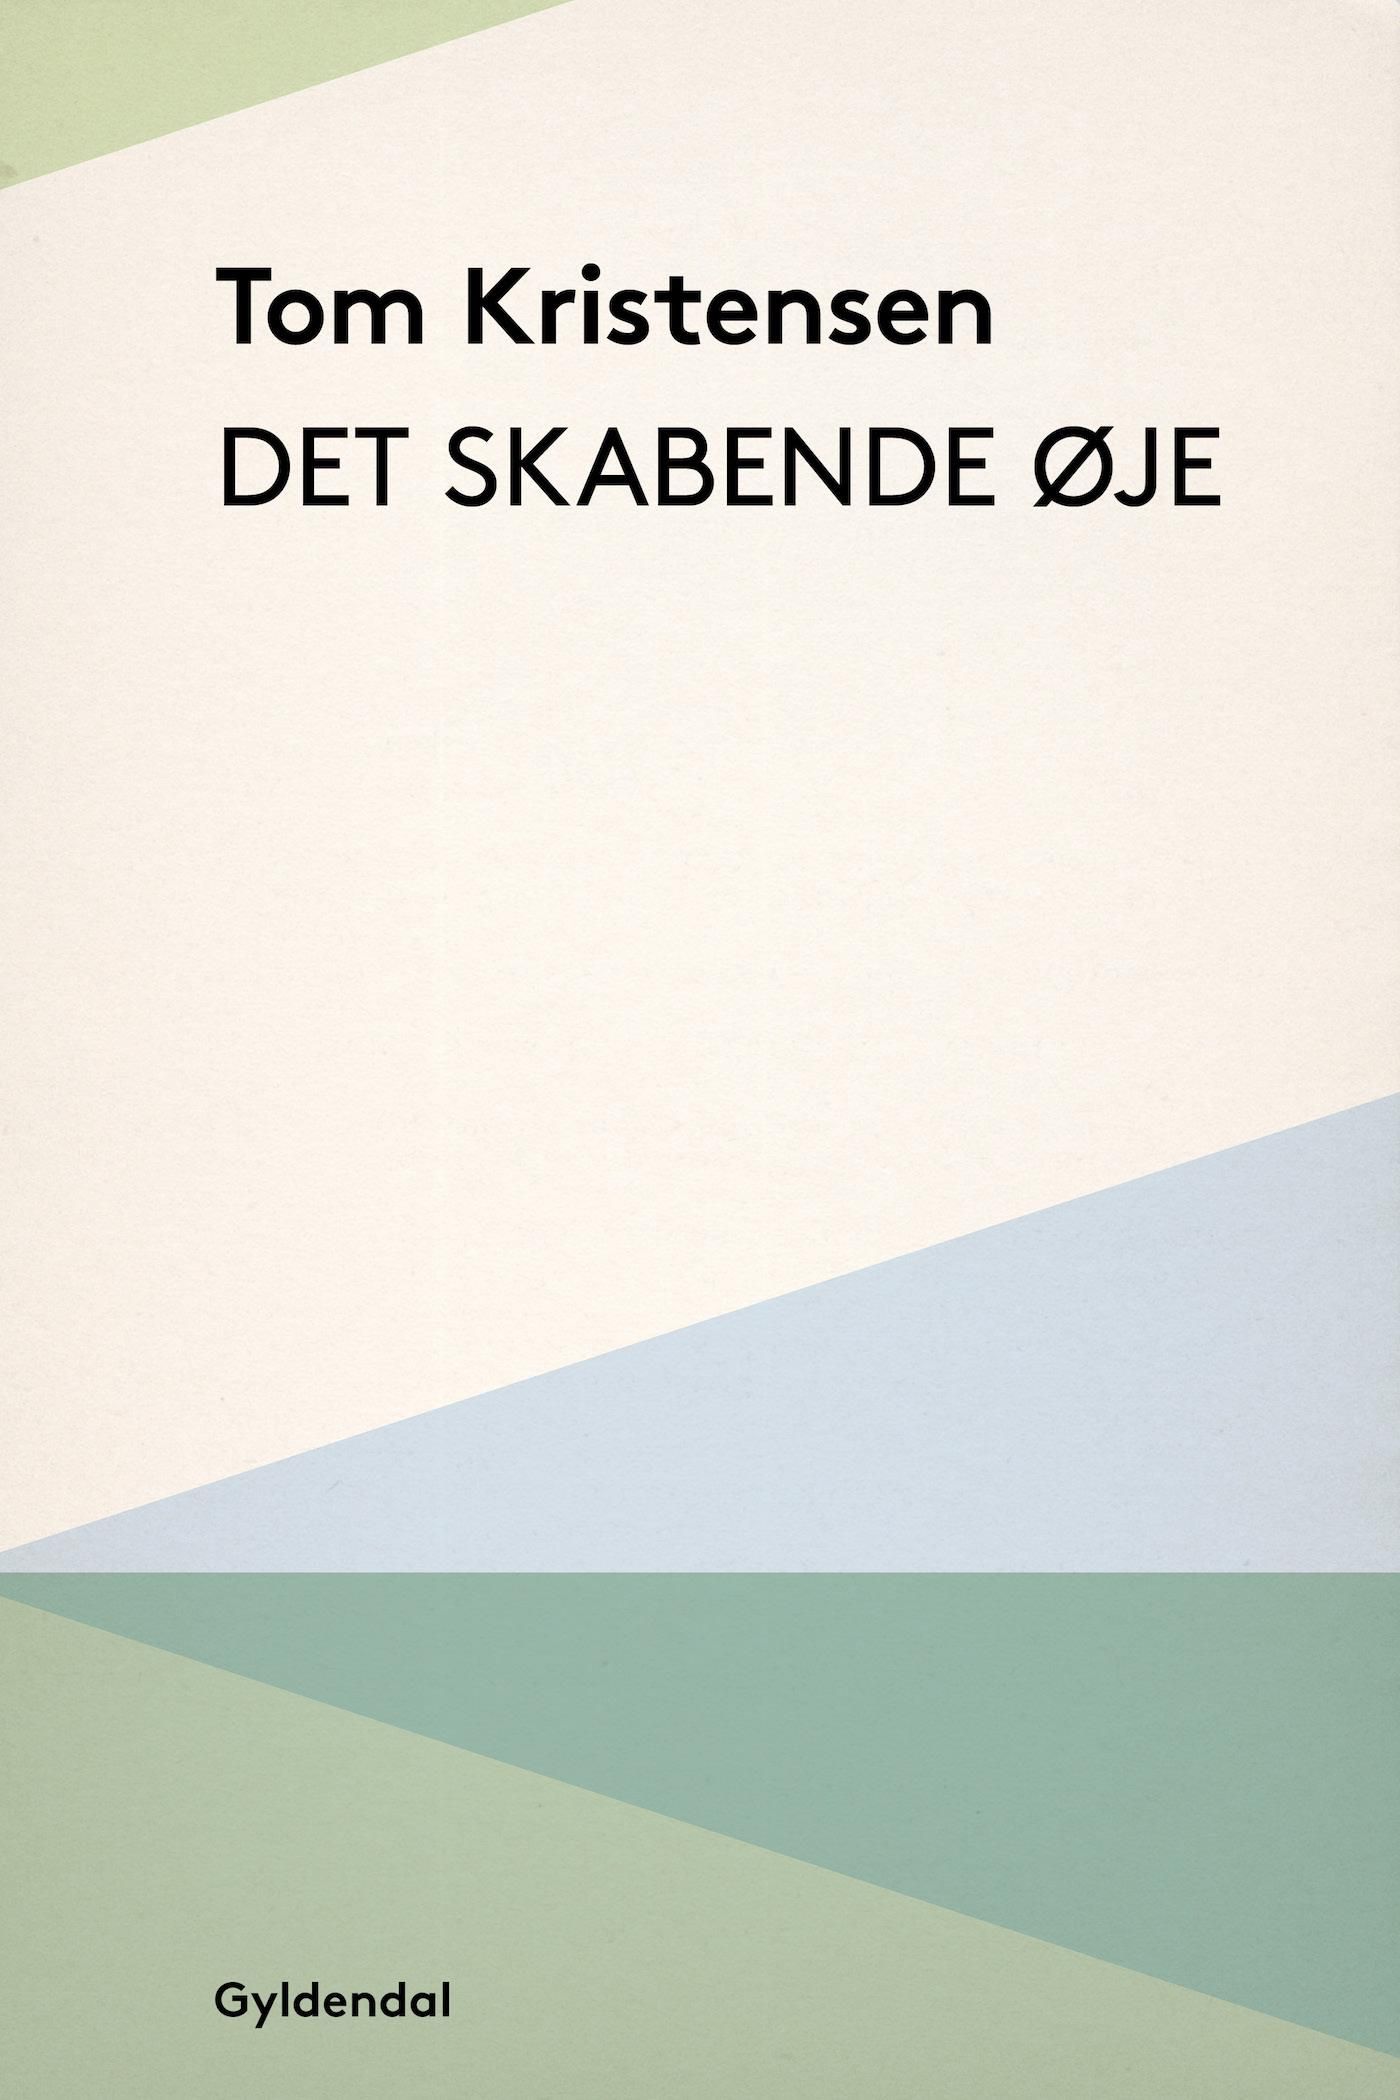 Det skabende Øje, eBook by Tom Kristensen